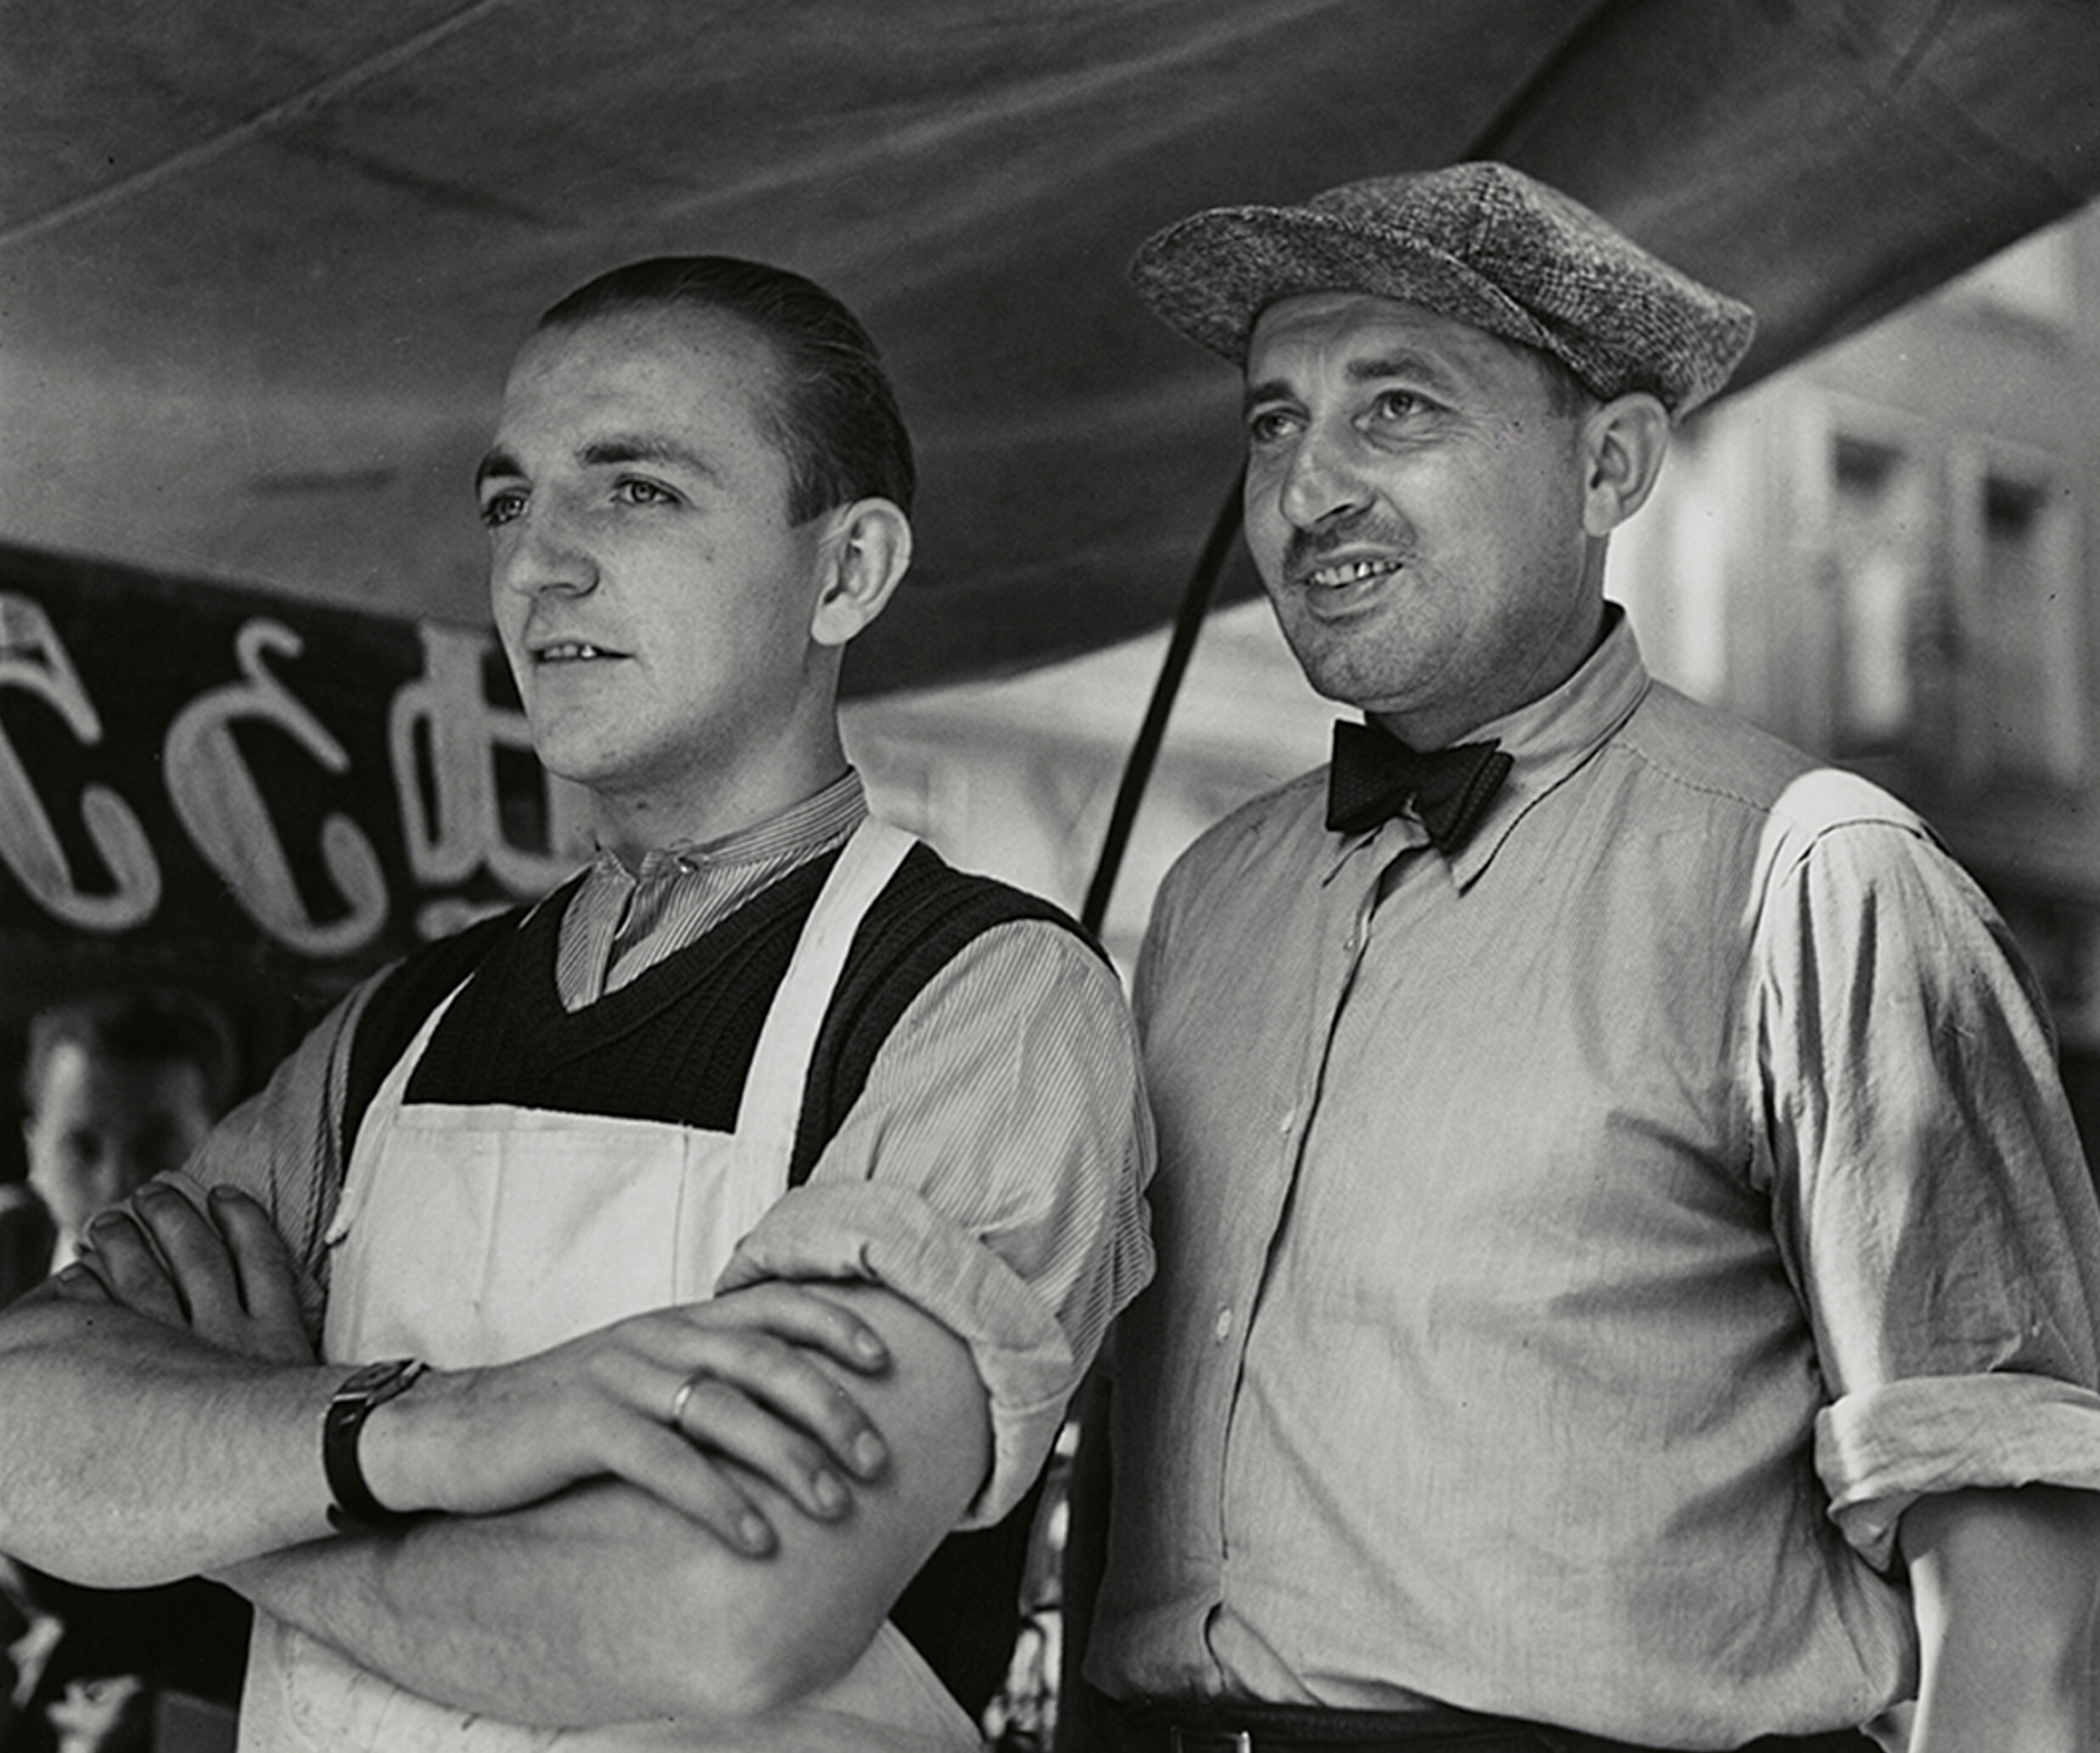 Продавцы, вероятно, Париж, 1929-начало 1930-х гг. Фотограф Роман Вишняк